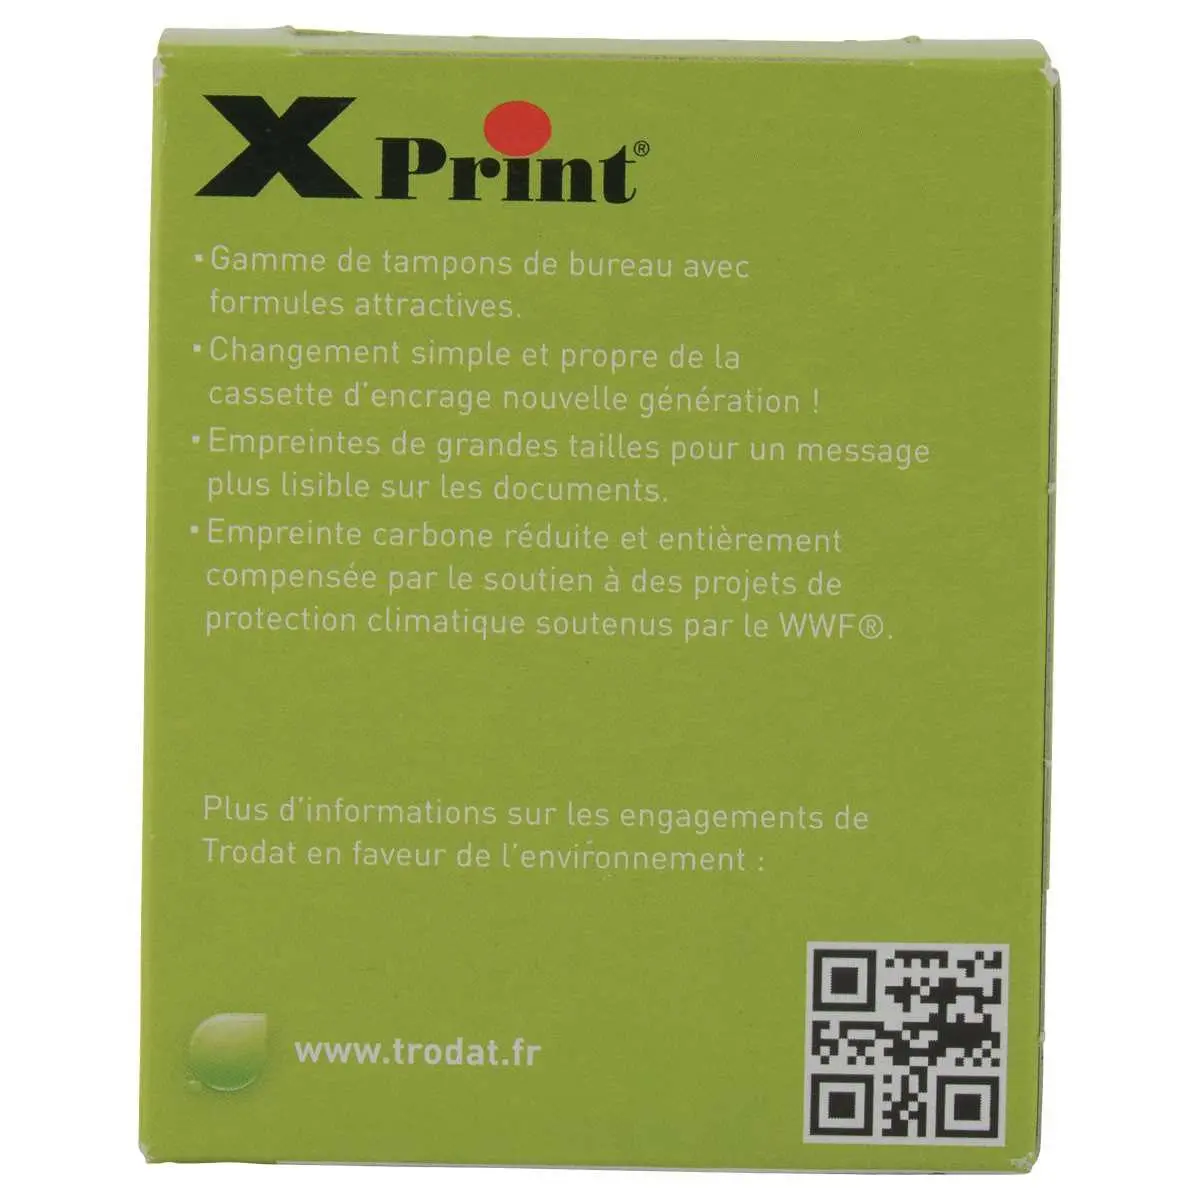 Tampon à formule commerciale "Copie" XPrint - Trodat 4912 photo du produit